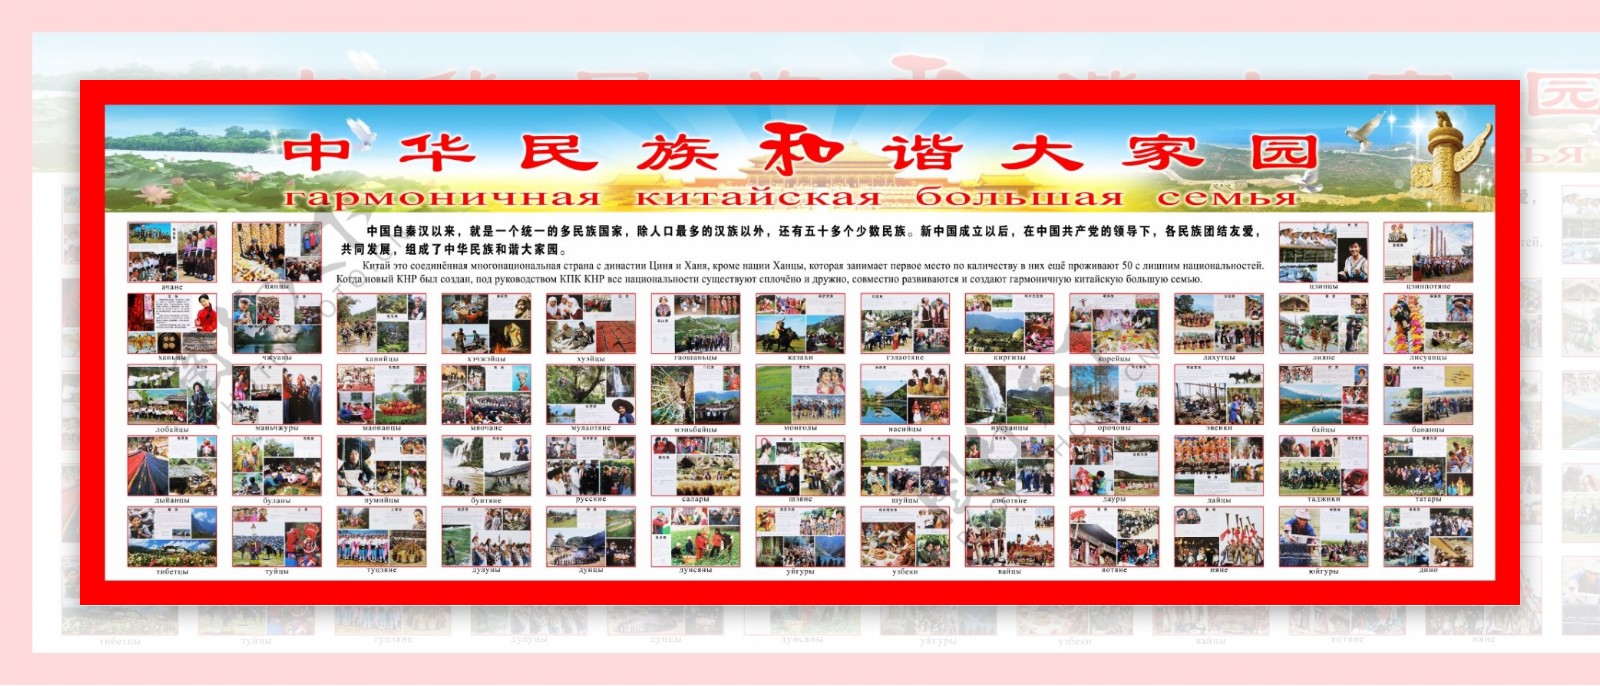 中华民族和谐大家园图片